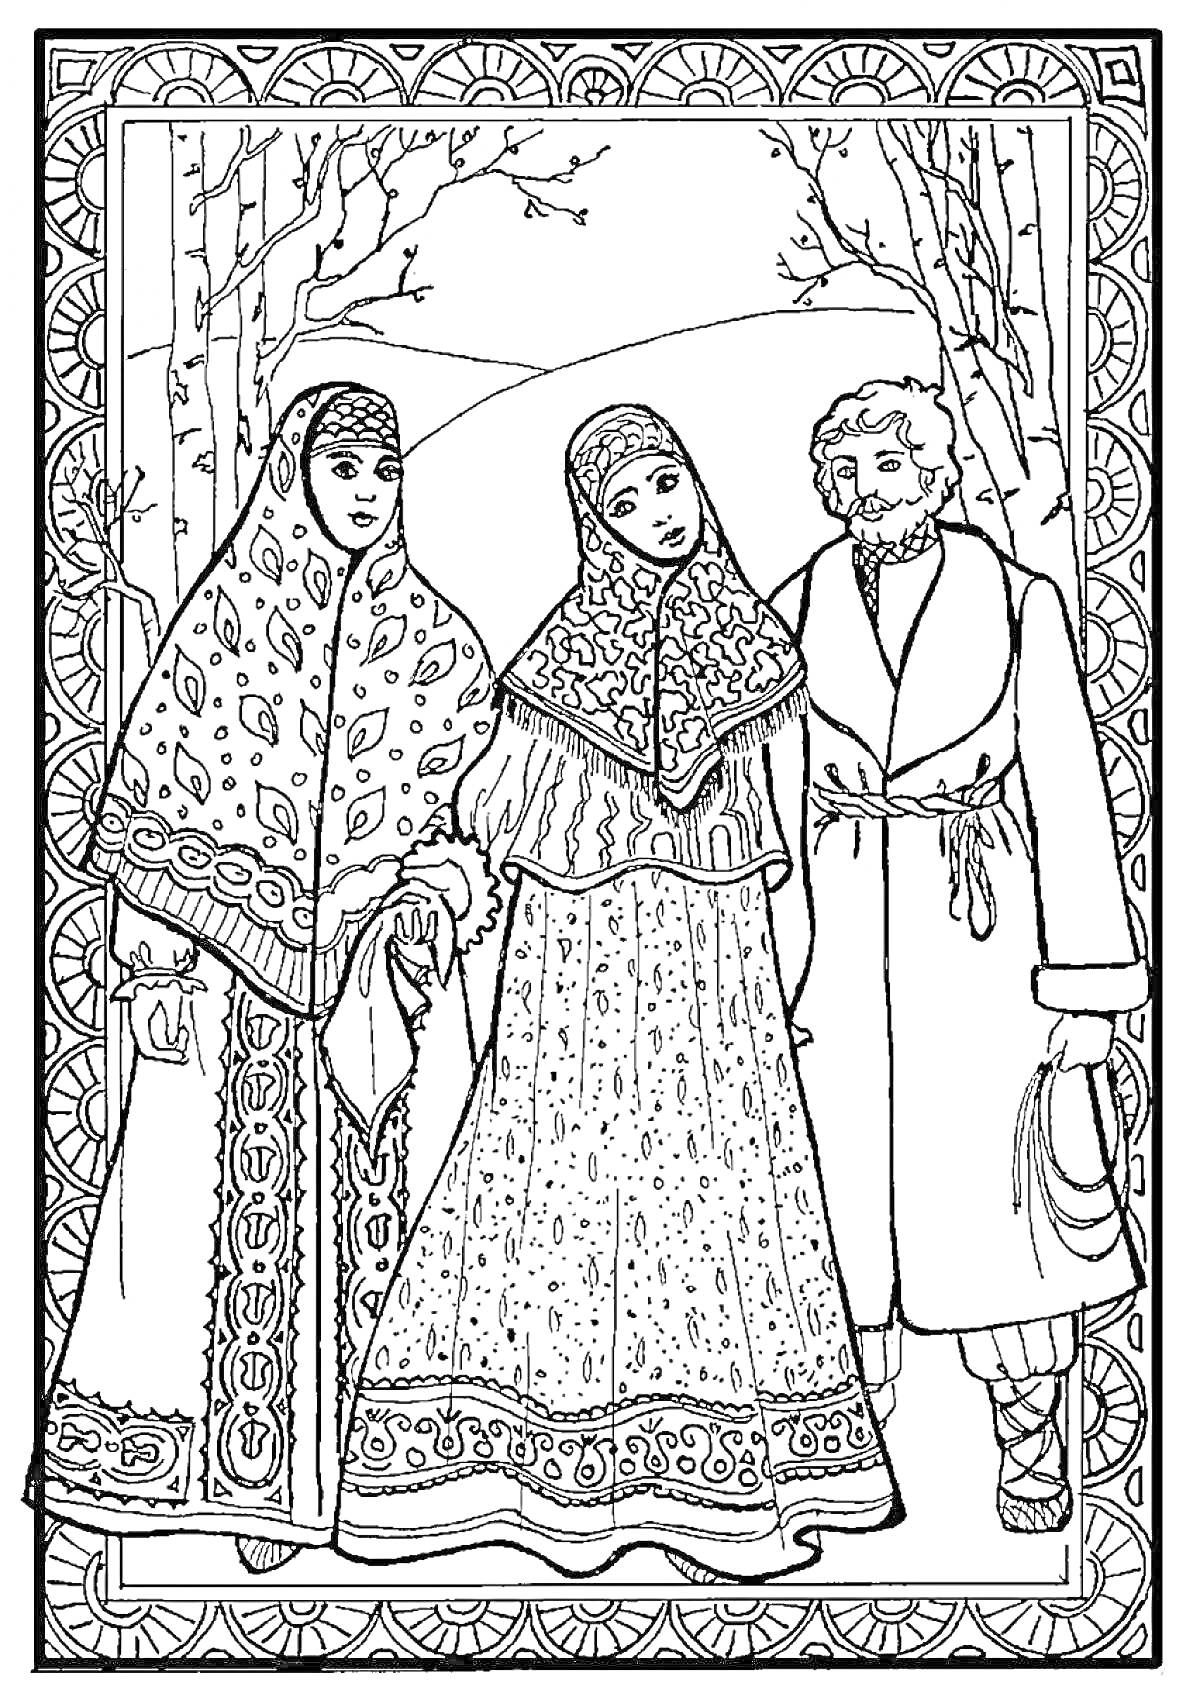 Раскраска Две женщины и мужчина в русском народном костюме, в лесу зимой. Женщины одеты в сарафаны и расписные платки, мужчина в длинный традиционный кафтан с поясом и меховой шапочкой.